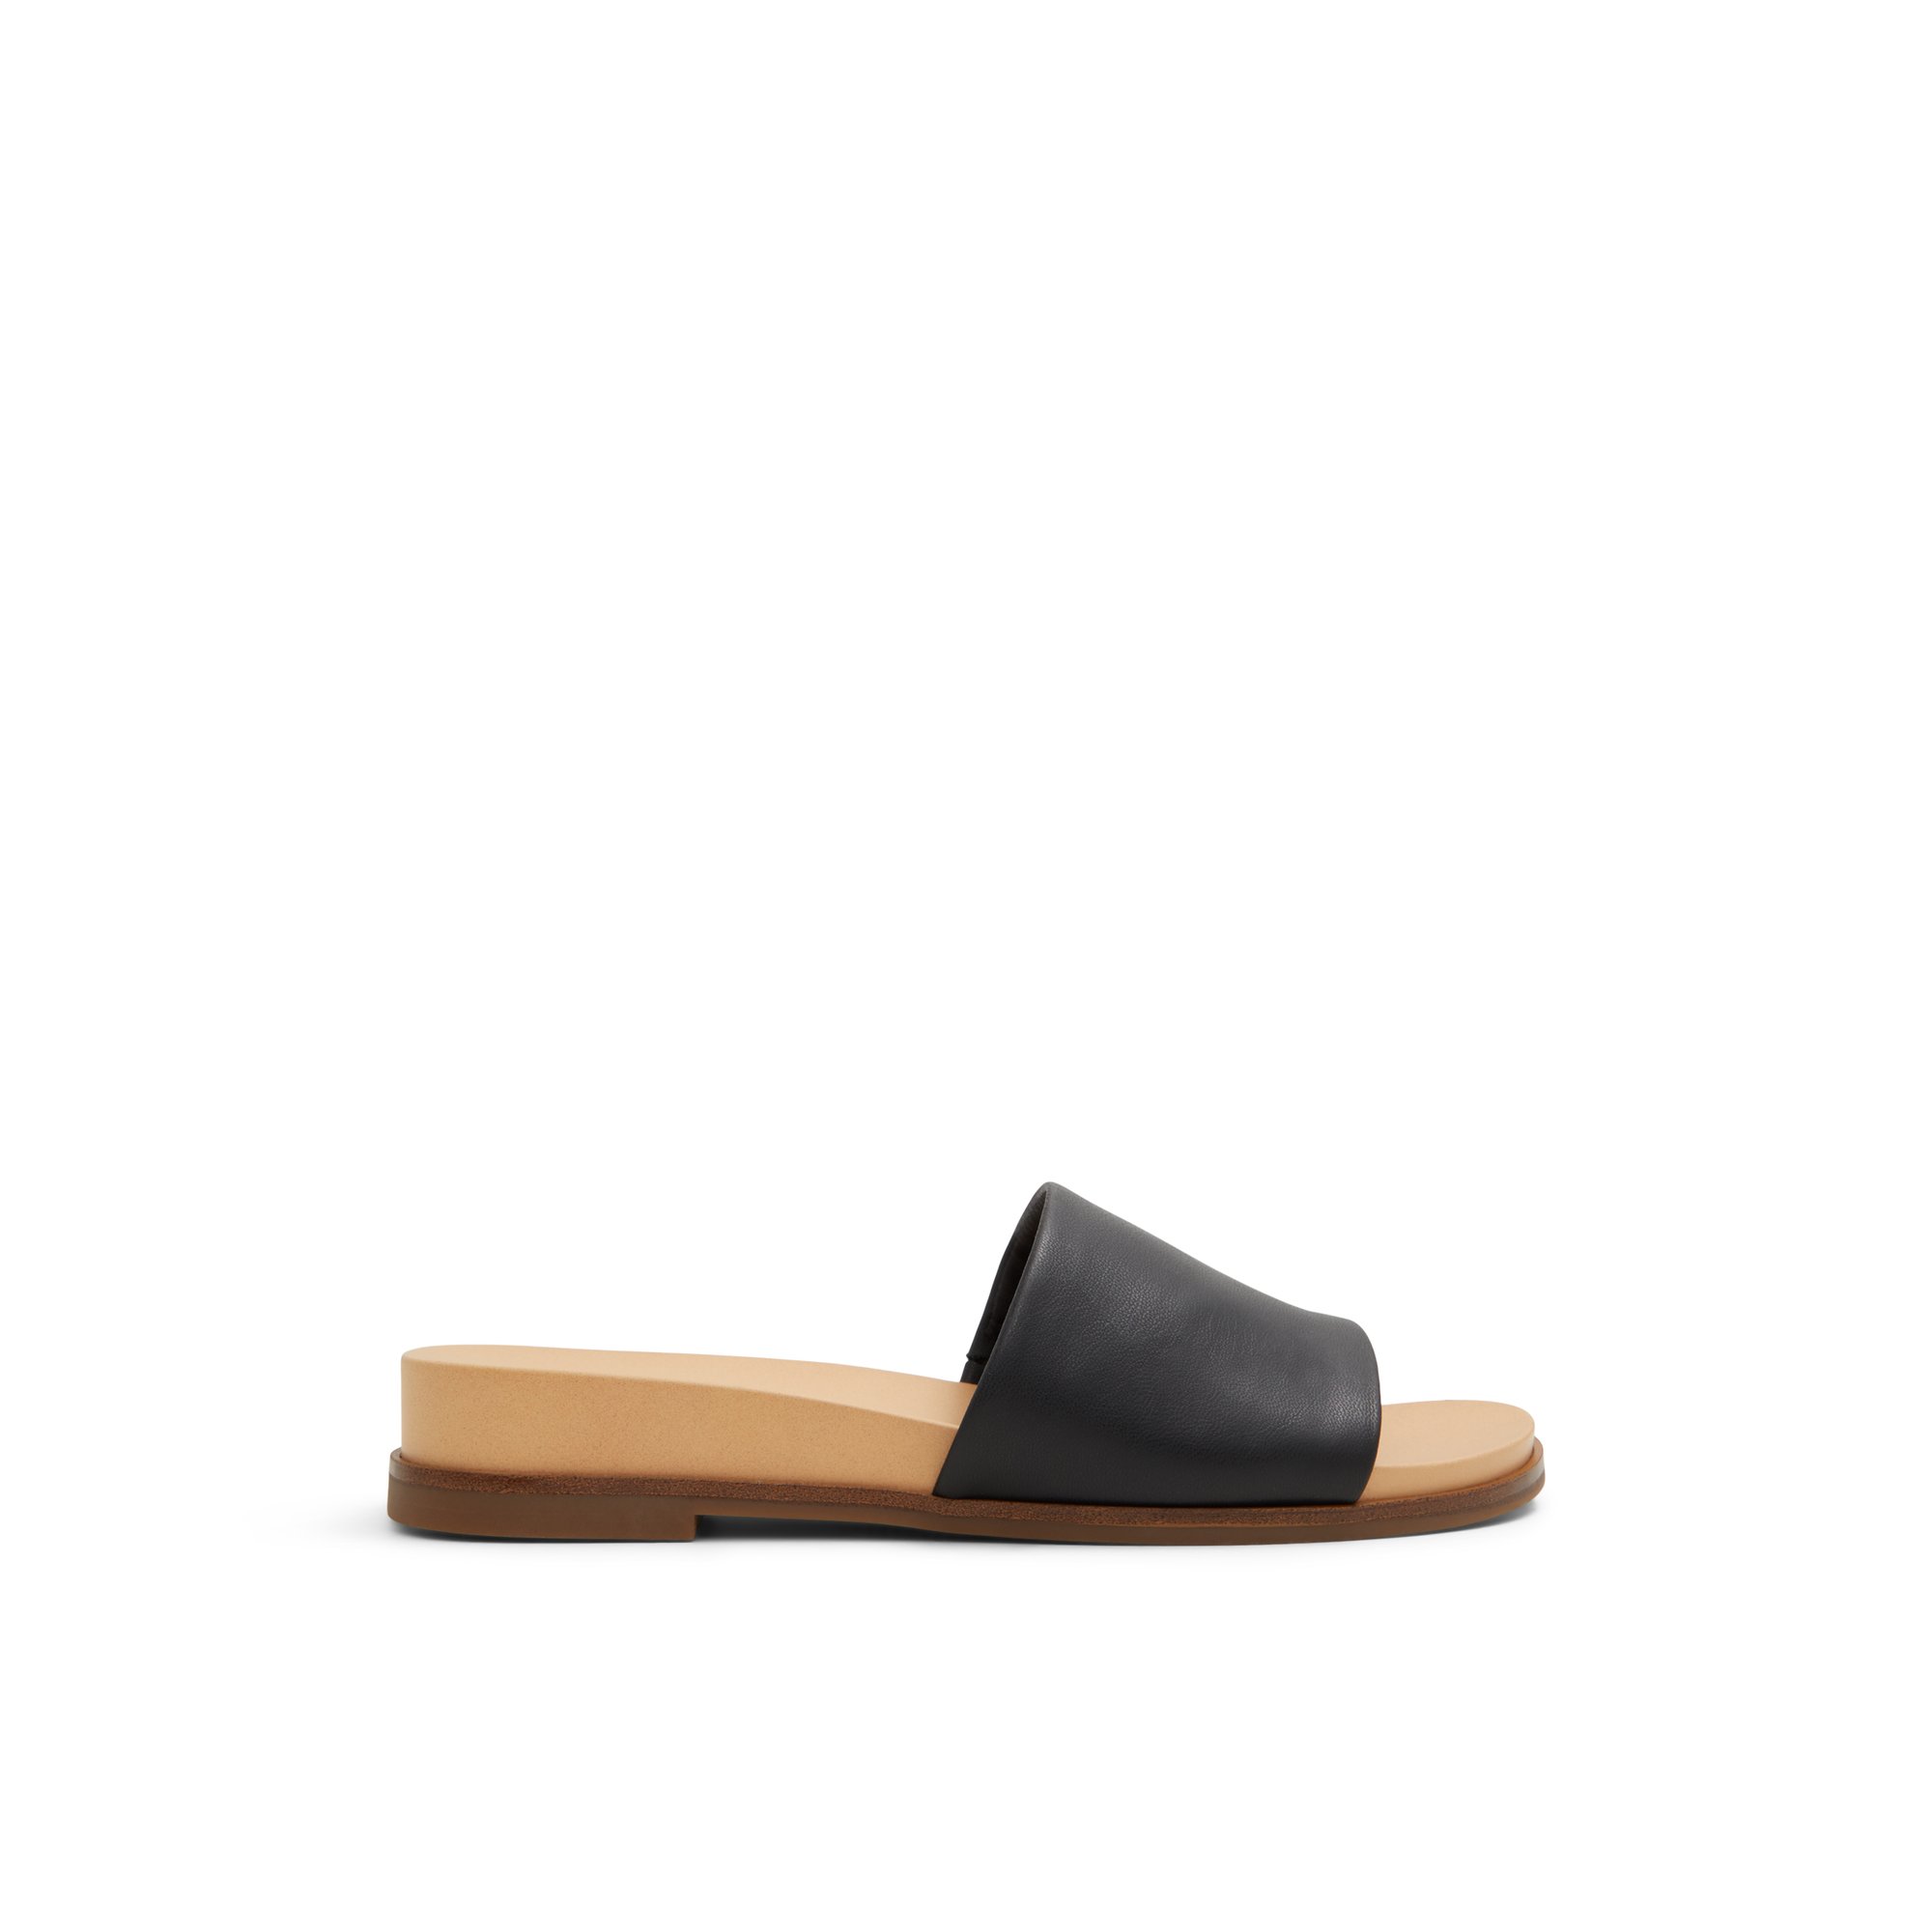 ALDO Elina - Women's Flat Sandals - Black